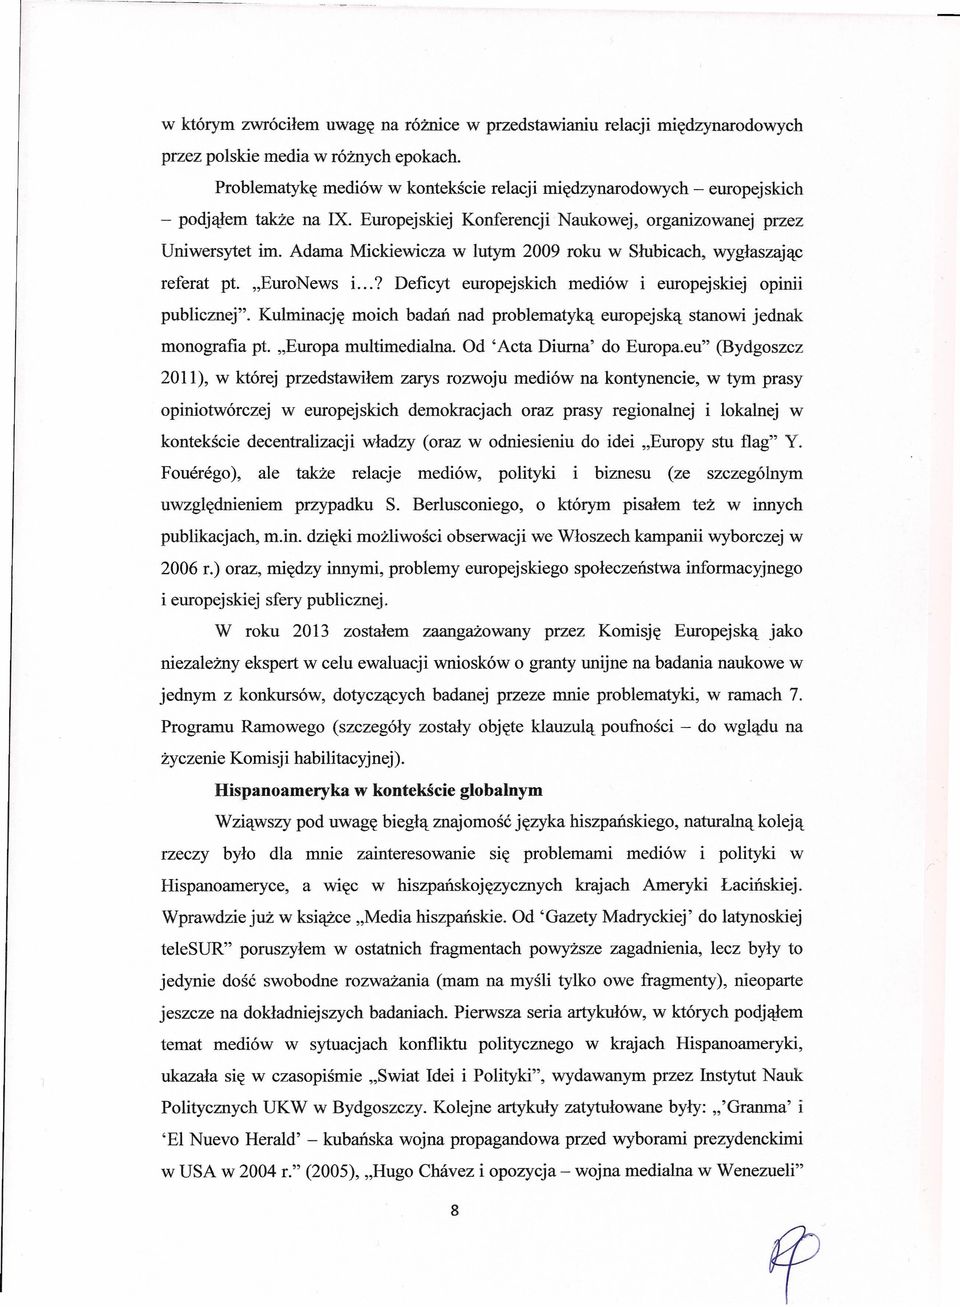 Adama Mickiewicza w lutym 2009 roku w Słubicach, wygłaszając referat pt. "EuroNews i...? Deficyt europejskich mediów i europejskiej opinii publicznej".